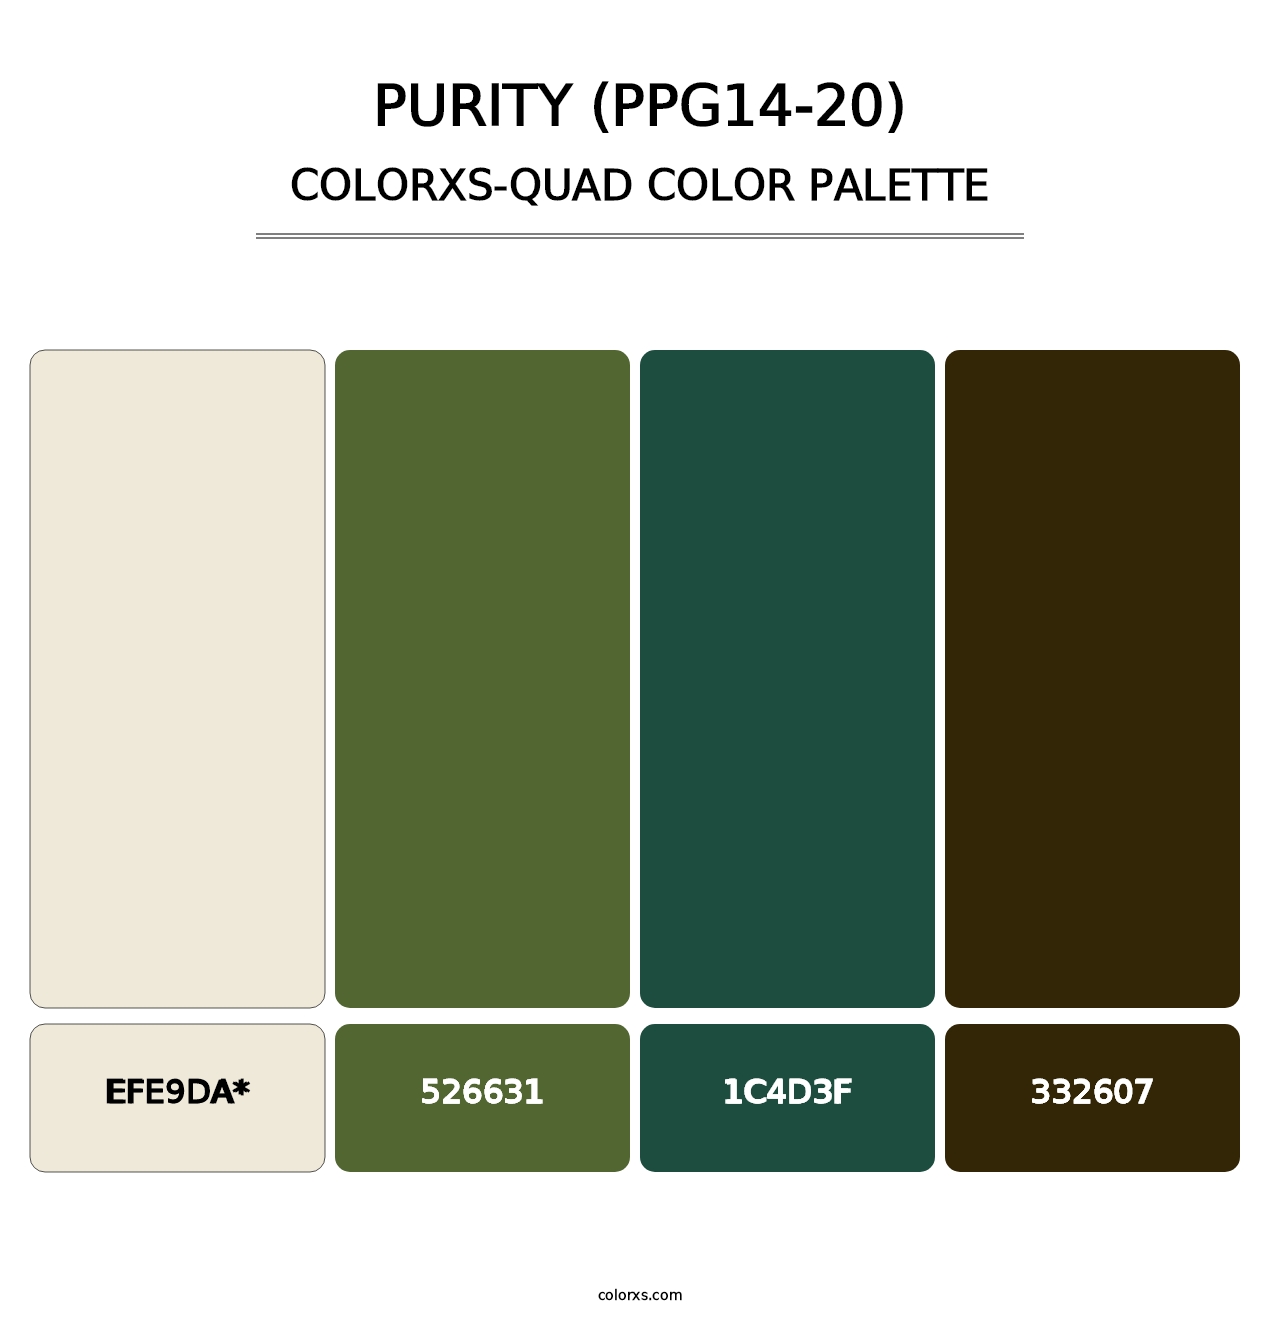 Purity (PPG14-20) - Colorxs Quad Palette